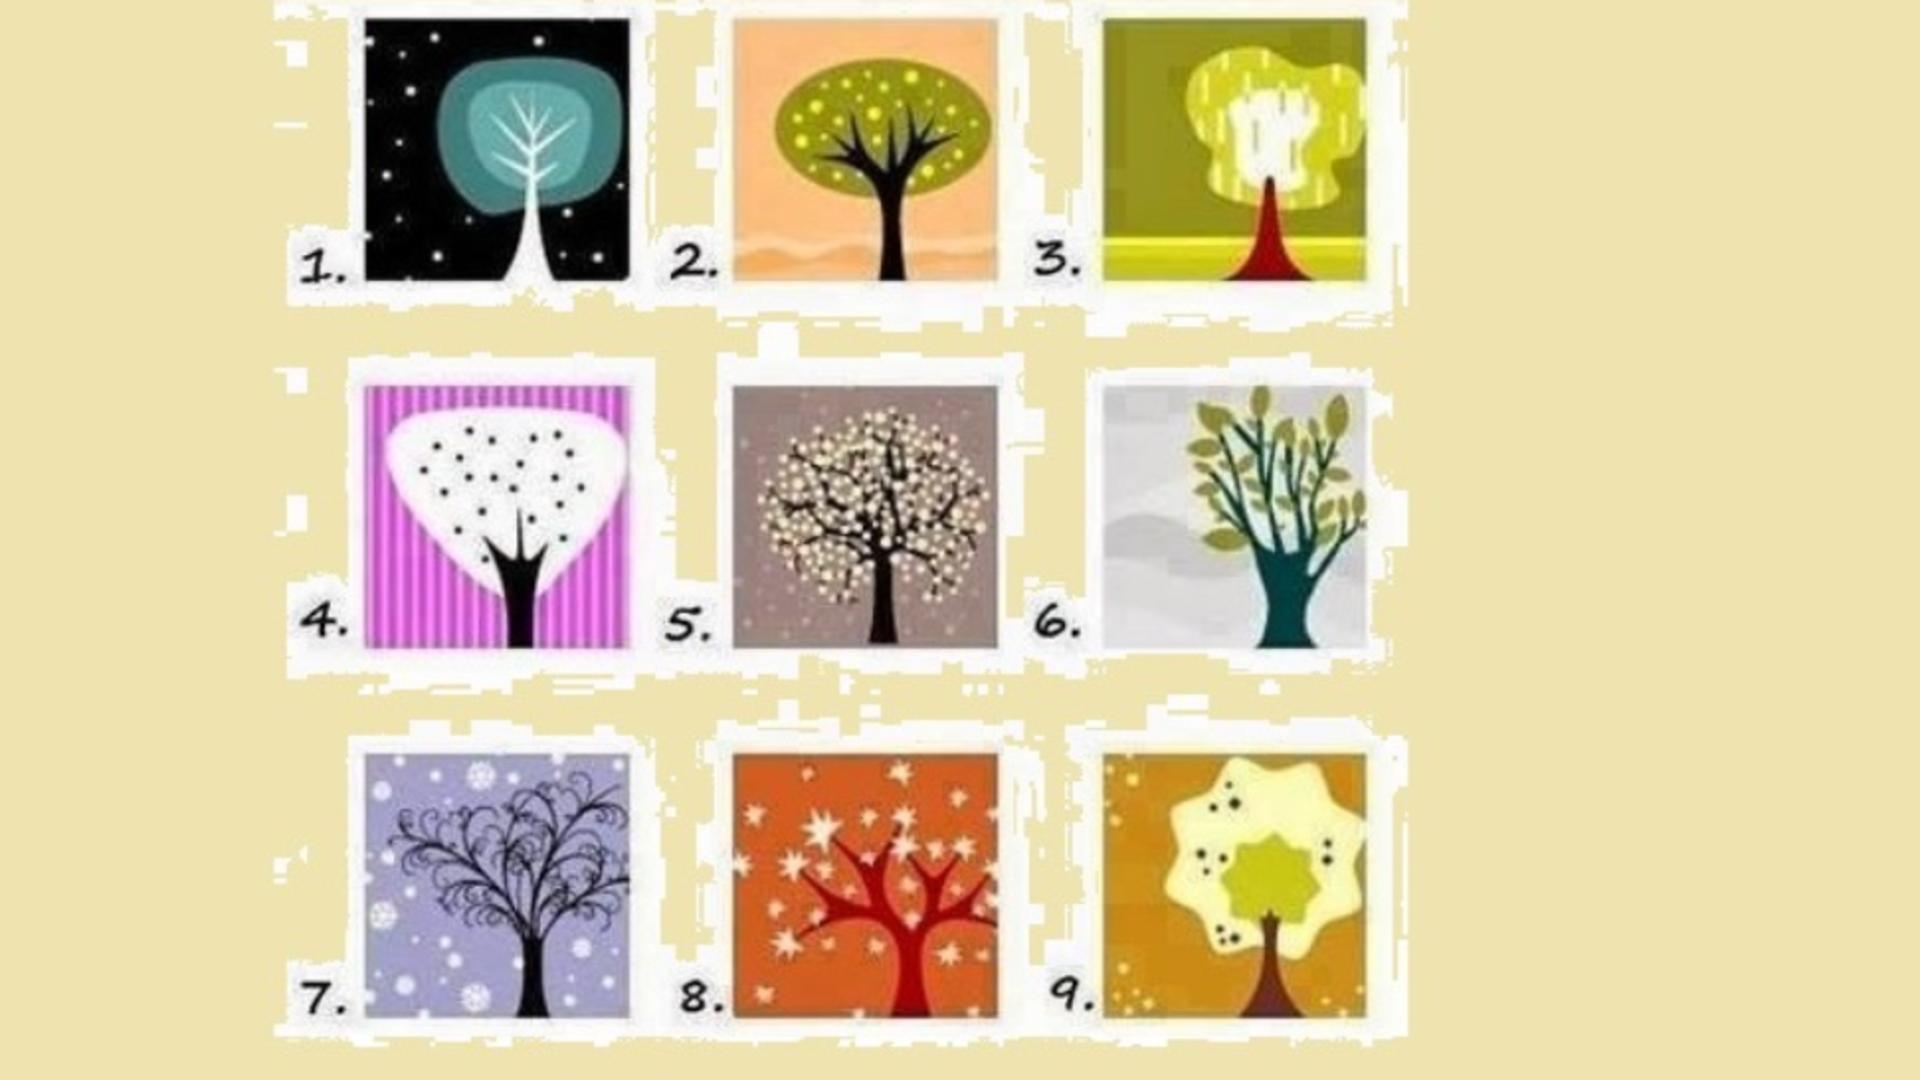 Test de personalitate: Ce copac îți place? Răspunsul spune multe lucruri ascunse despre tine